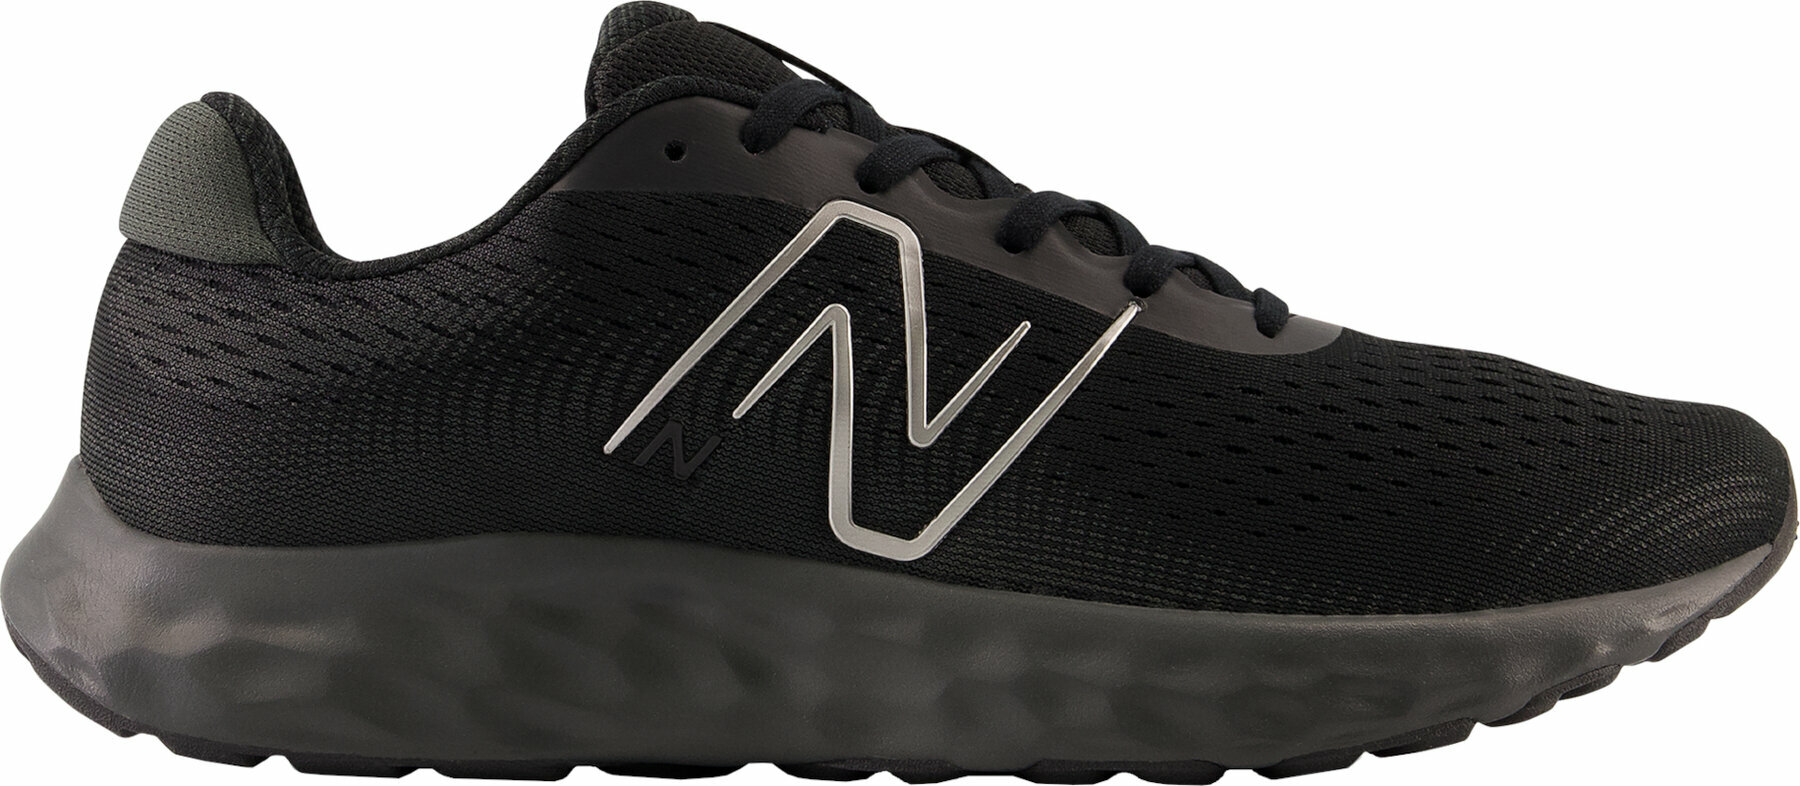 Silniční běžecká obuv New Balance Mens M520 Black 45 Silniční běžecká obuv